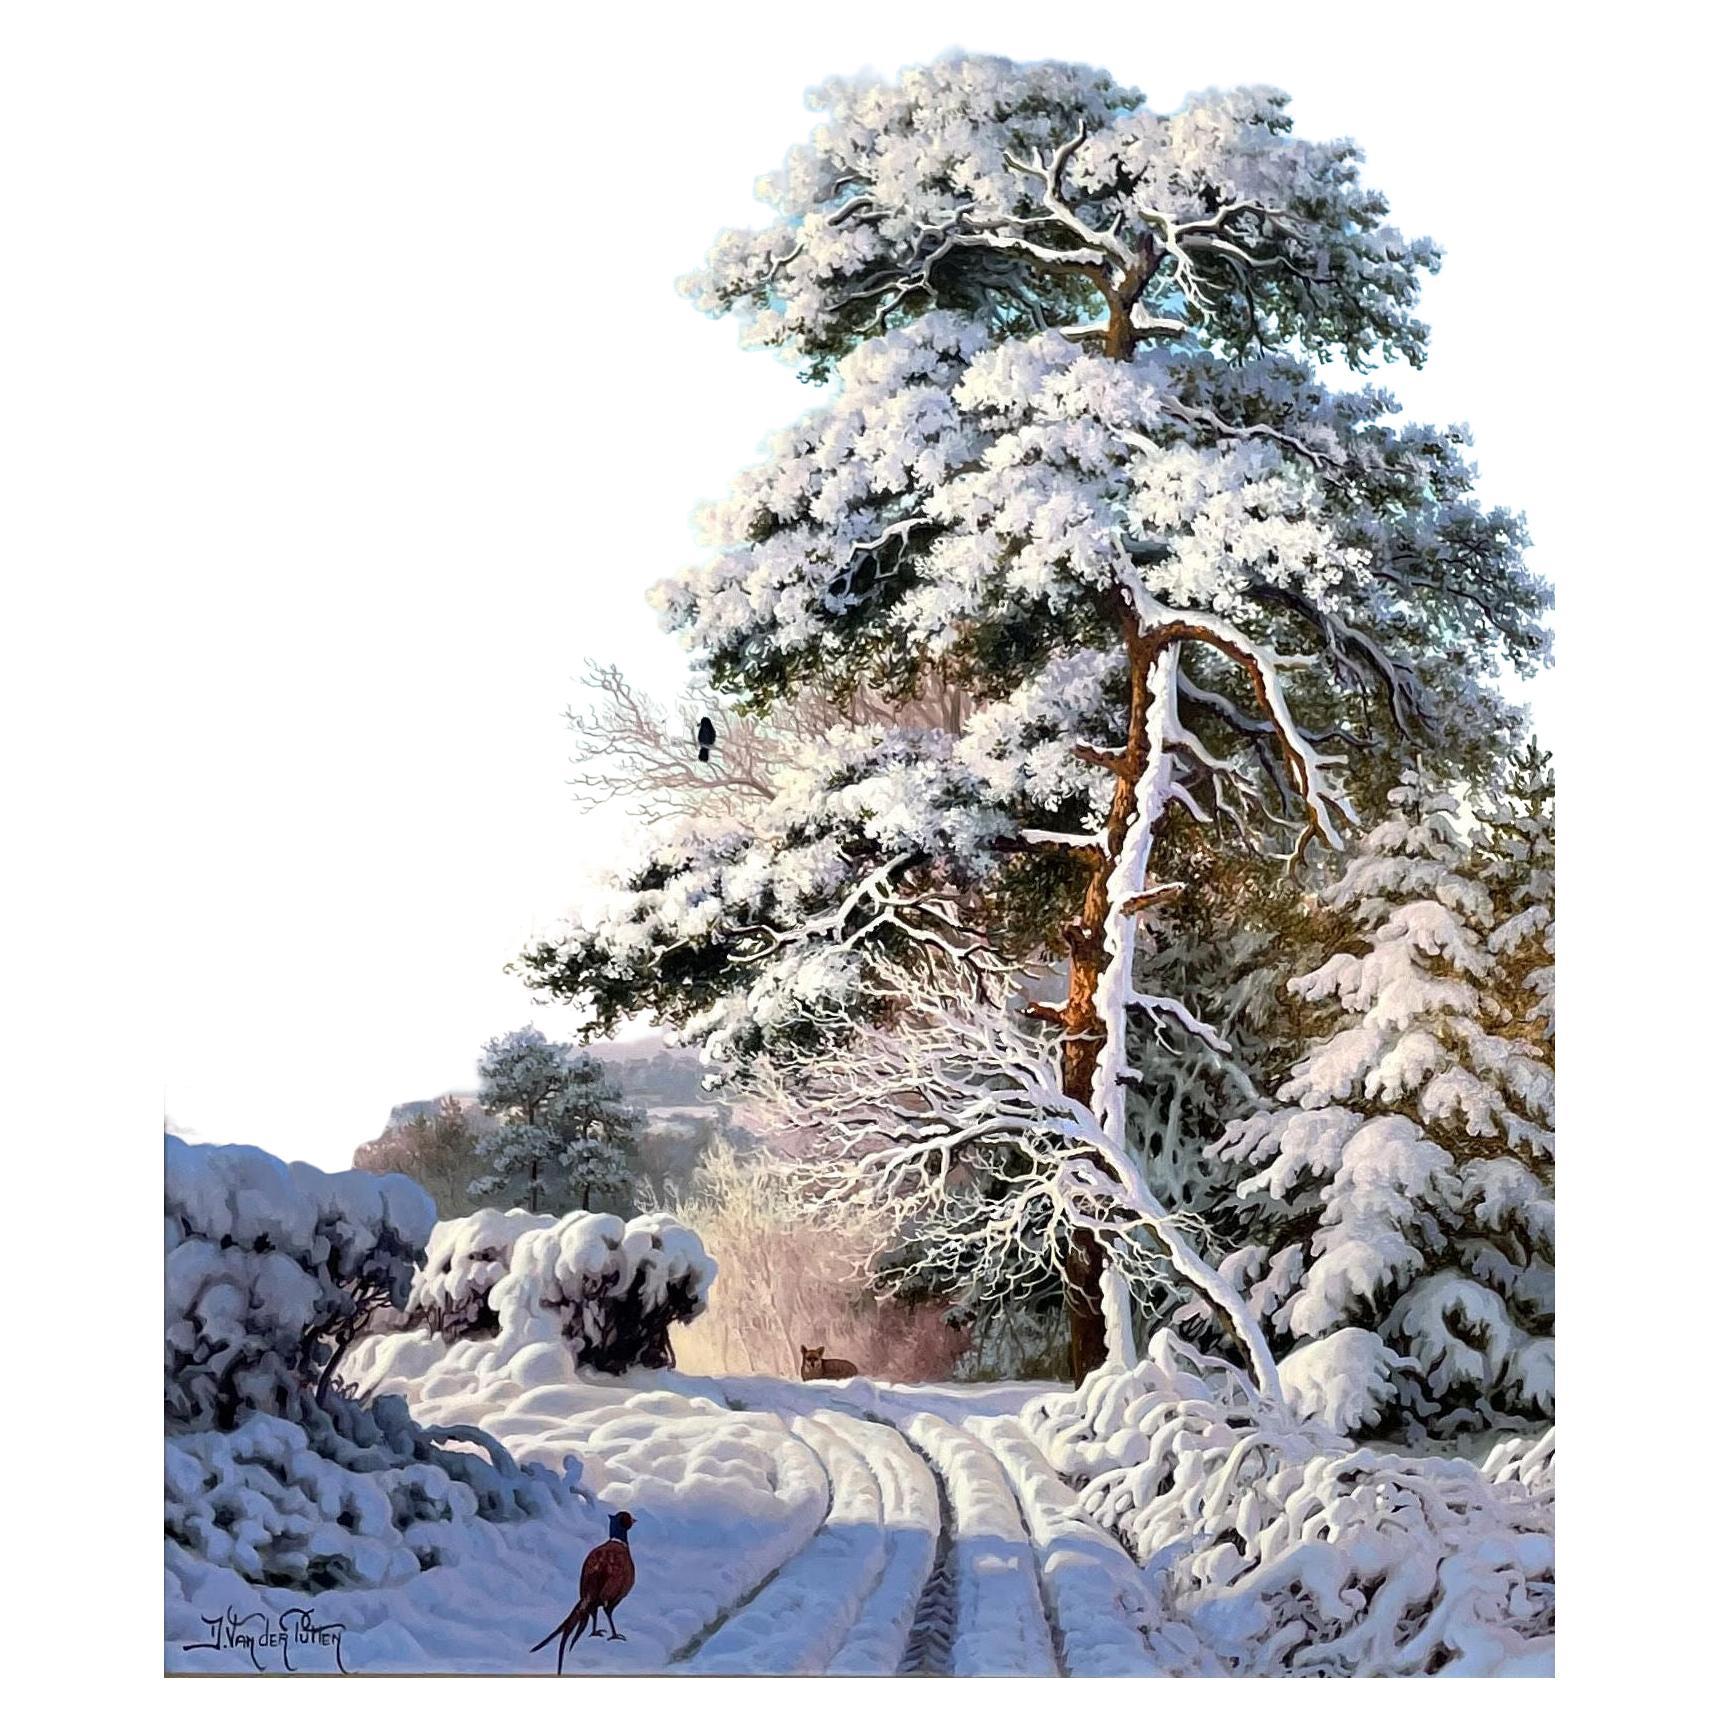 Hervorragendes Gemälde von Daniel Van der Putten, das eine wunderbare ländliche Schneeszene zeigt, einen schneebedeckten Feldweg mit einem hohen, schneebedeckten, hoch aufragenden Baum auf einem Hügel und einem einsamen Pfau auf dem Boden in dem